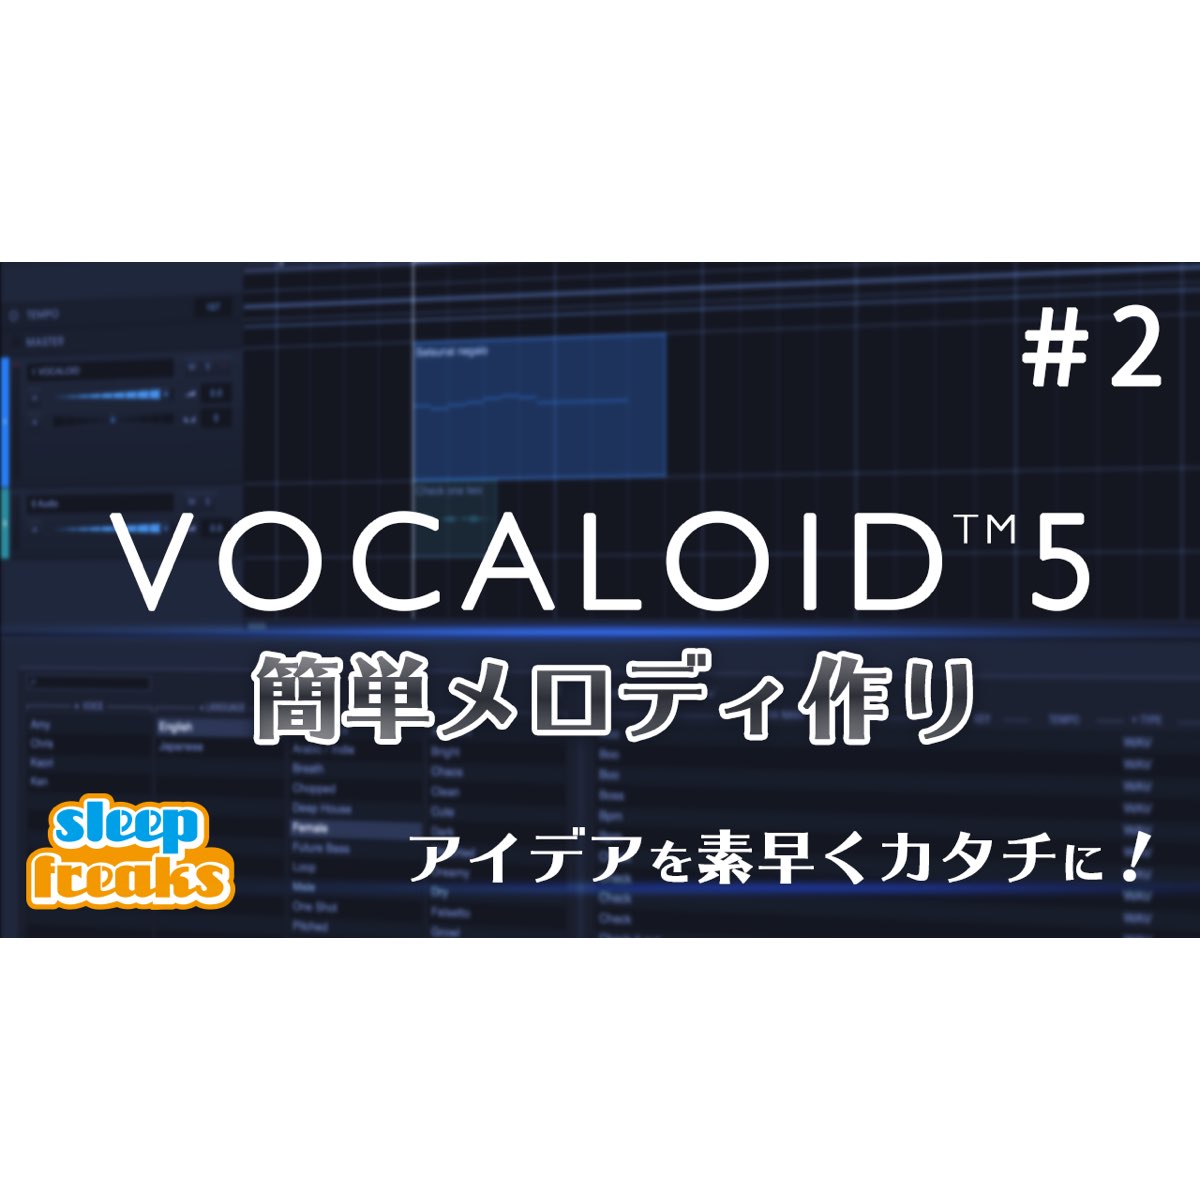 vocaloid 4 editor manual